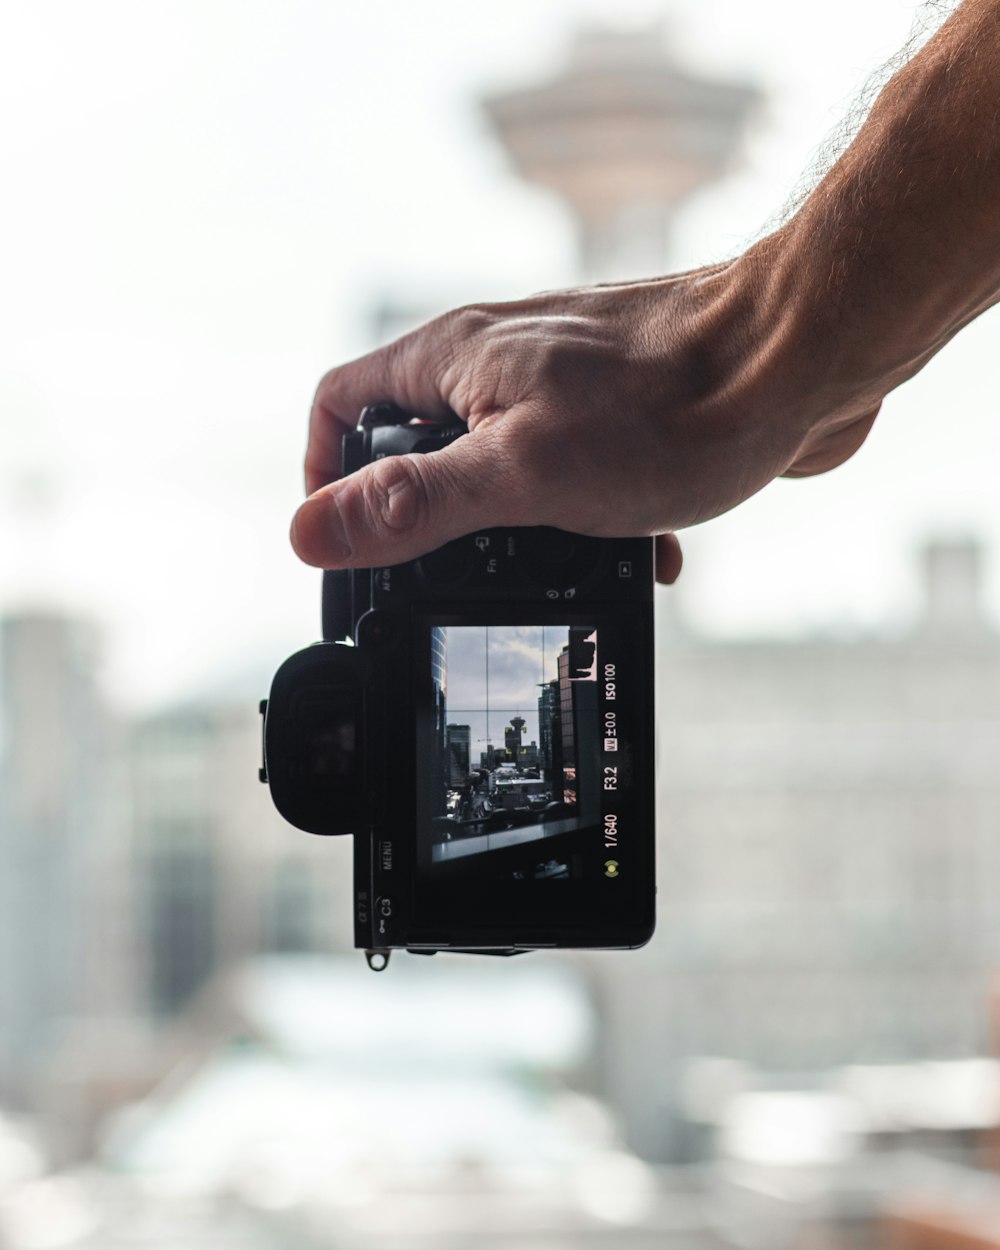 pessoa segurando smartphone preto tirando foto do edifício branco durante o dia